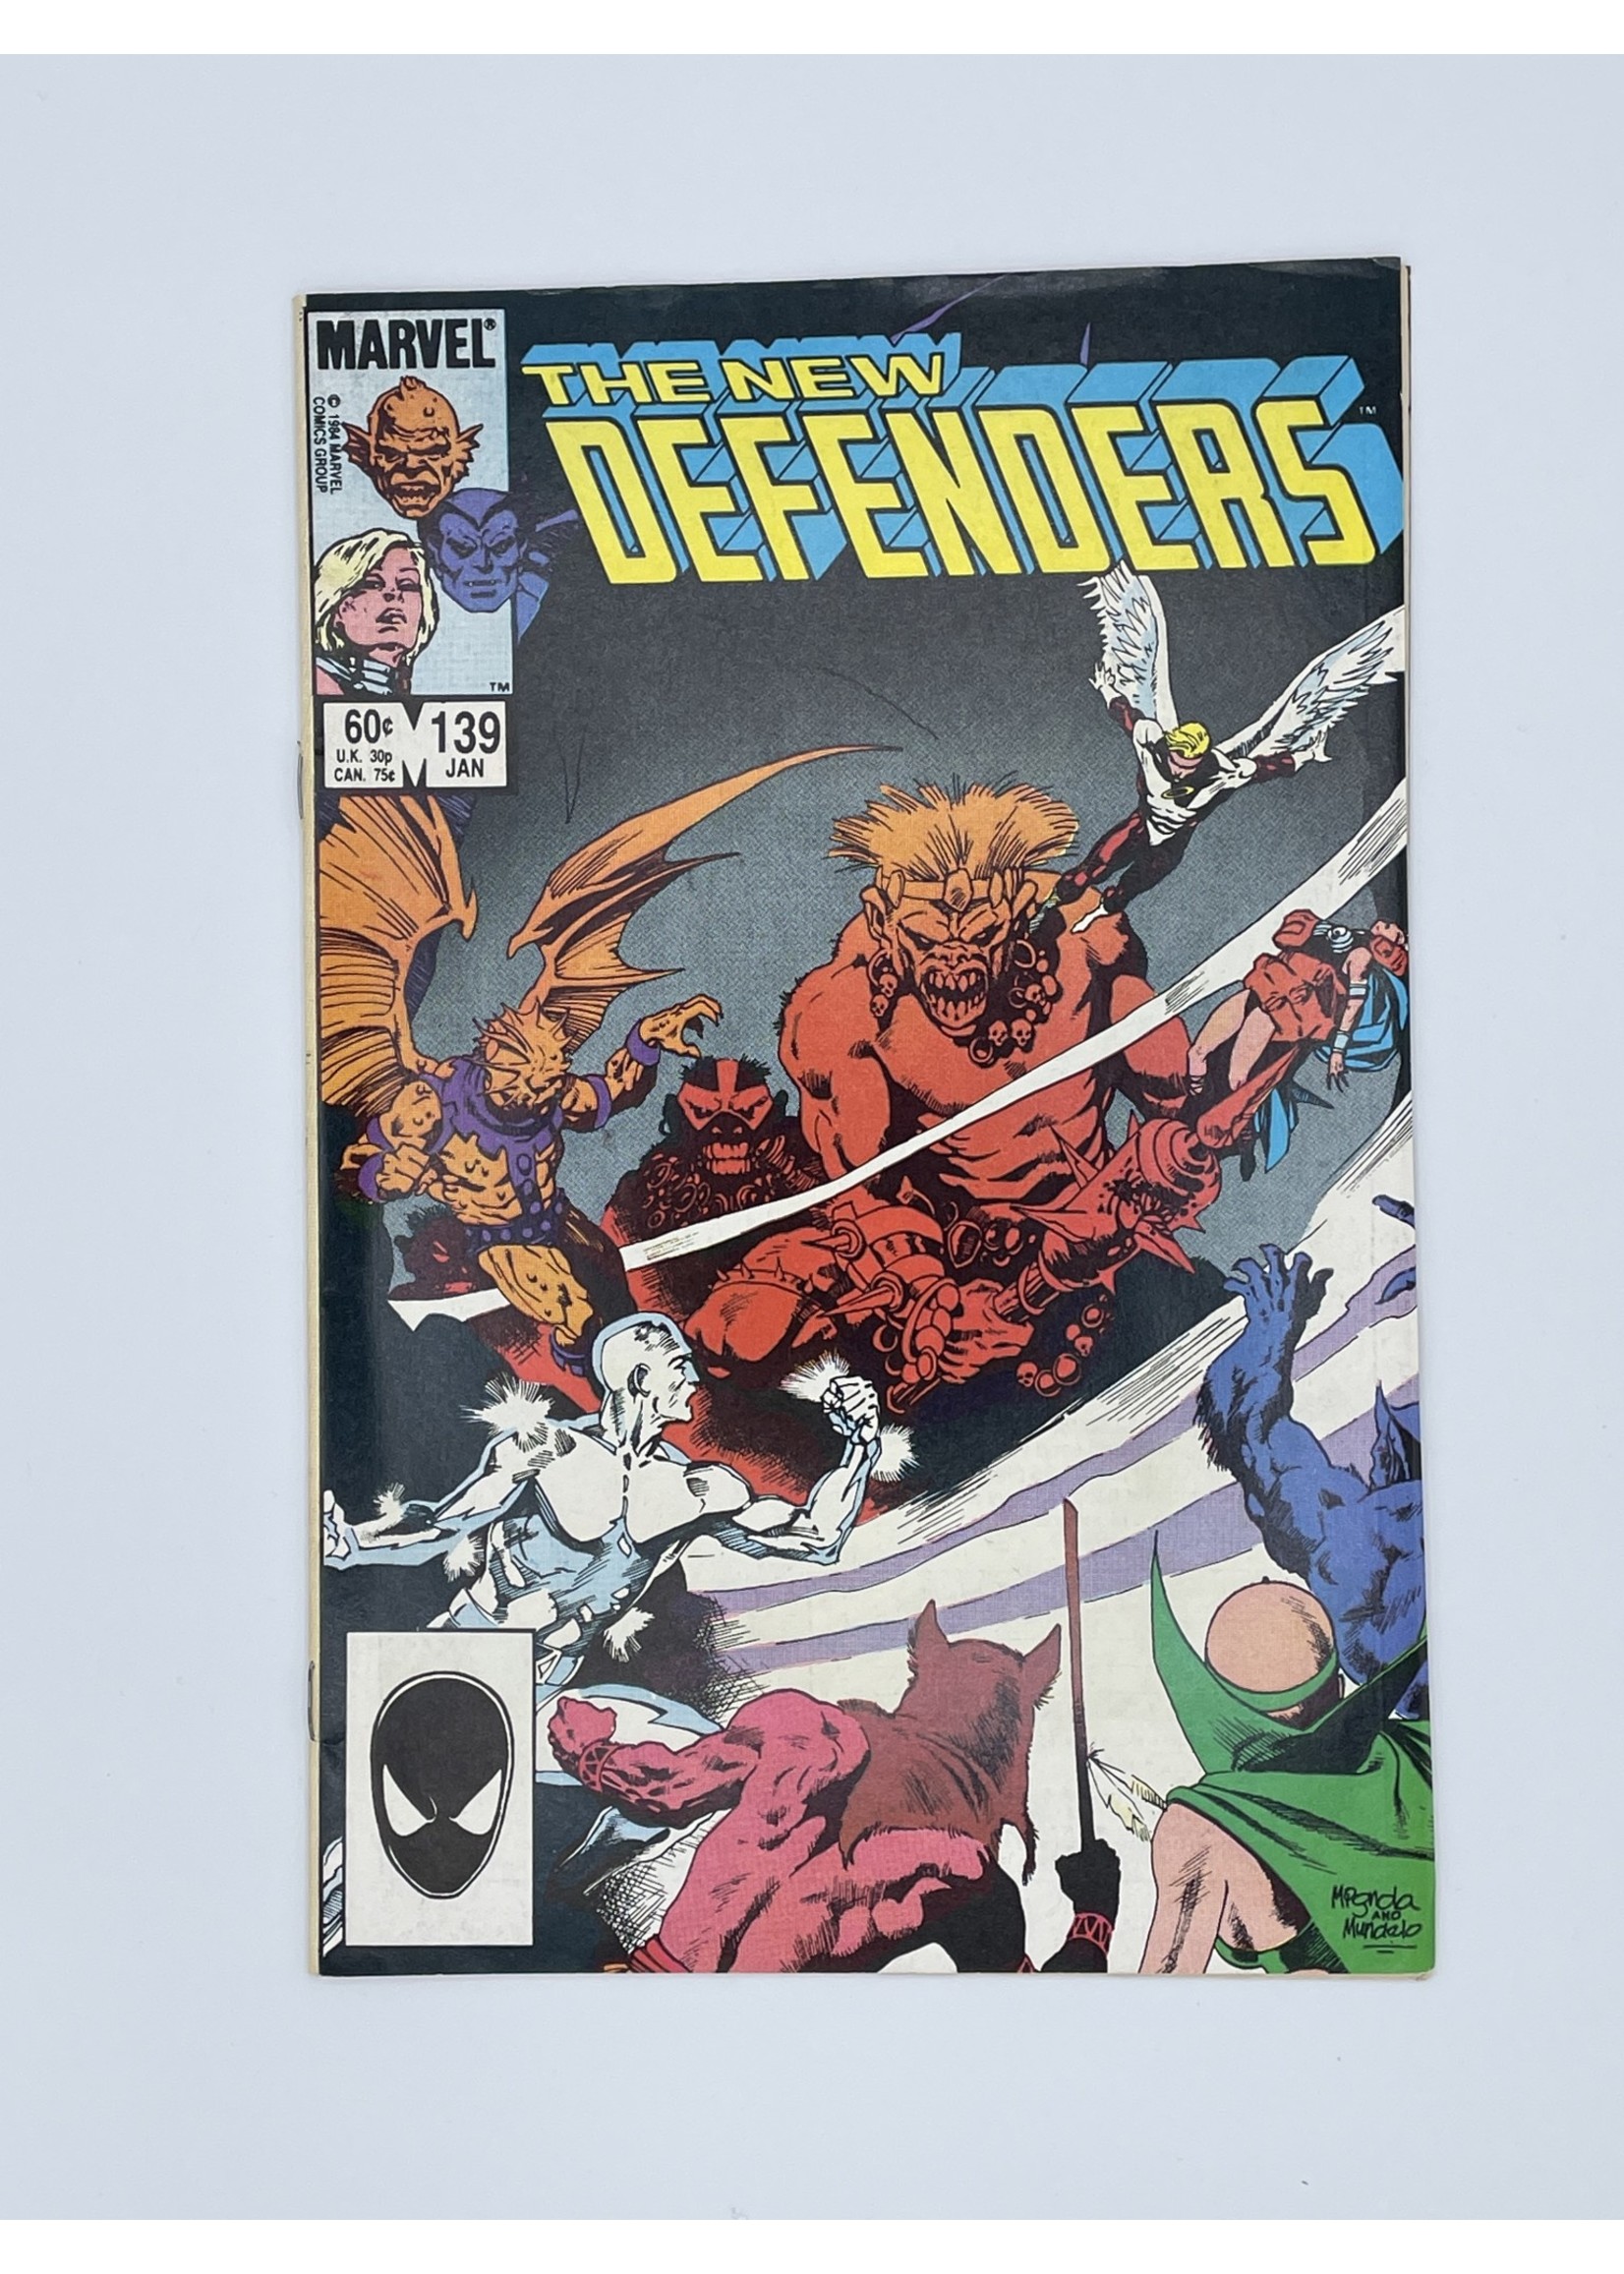 Marvel Defenders #139 Marvel January 1985